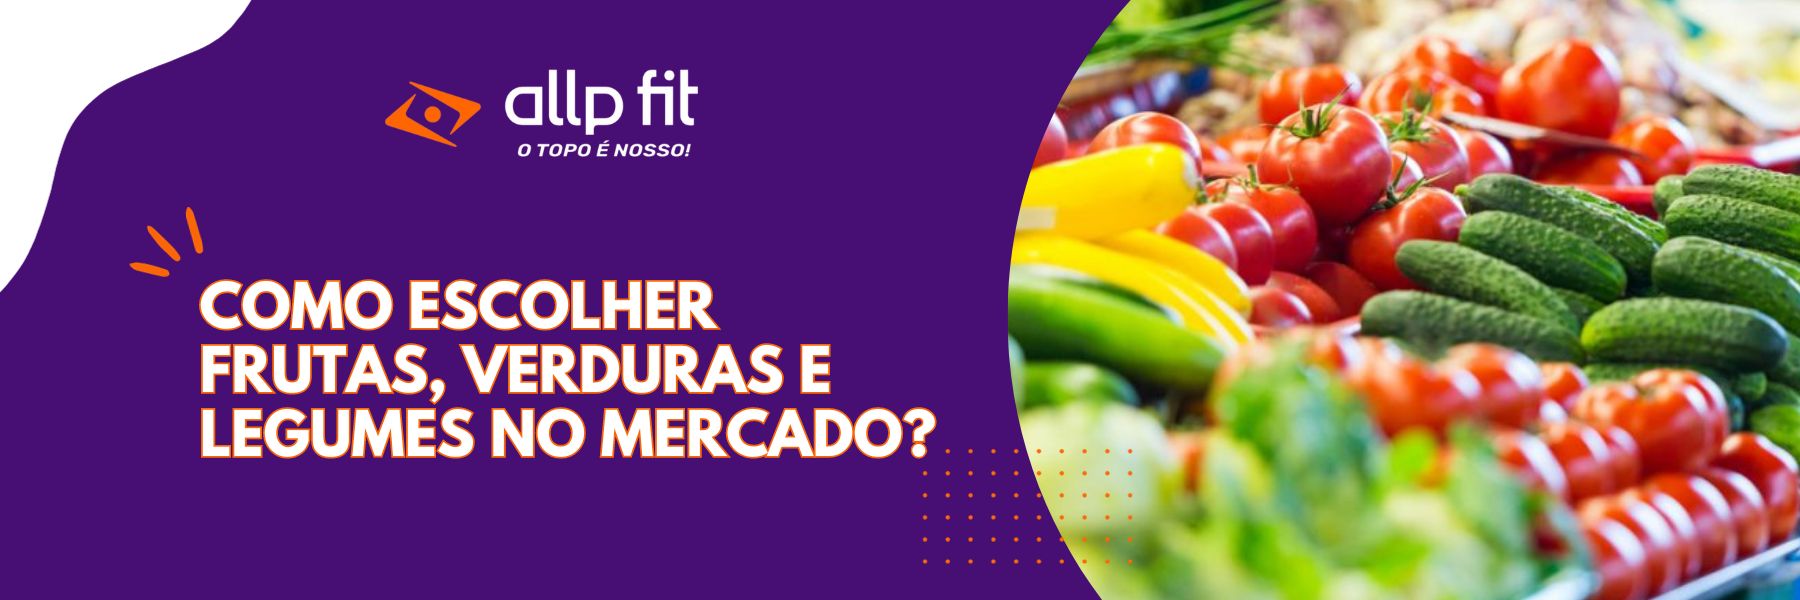 Como Escolher Frutas Verduras E Legumes No Mercado Allp Fit Nutri 1057